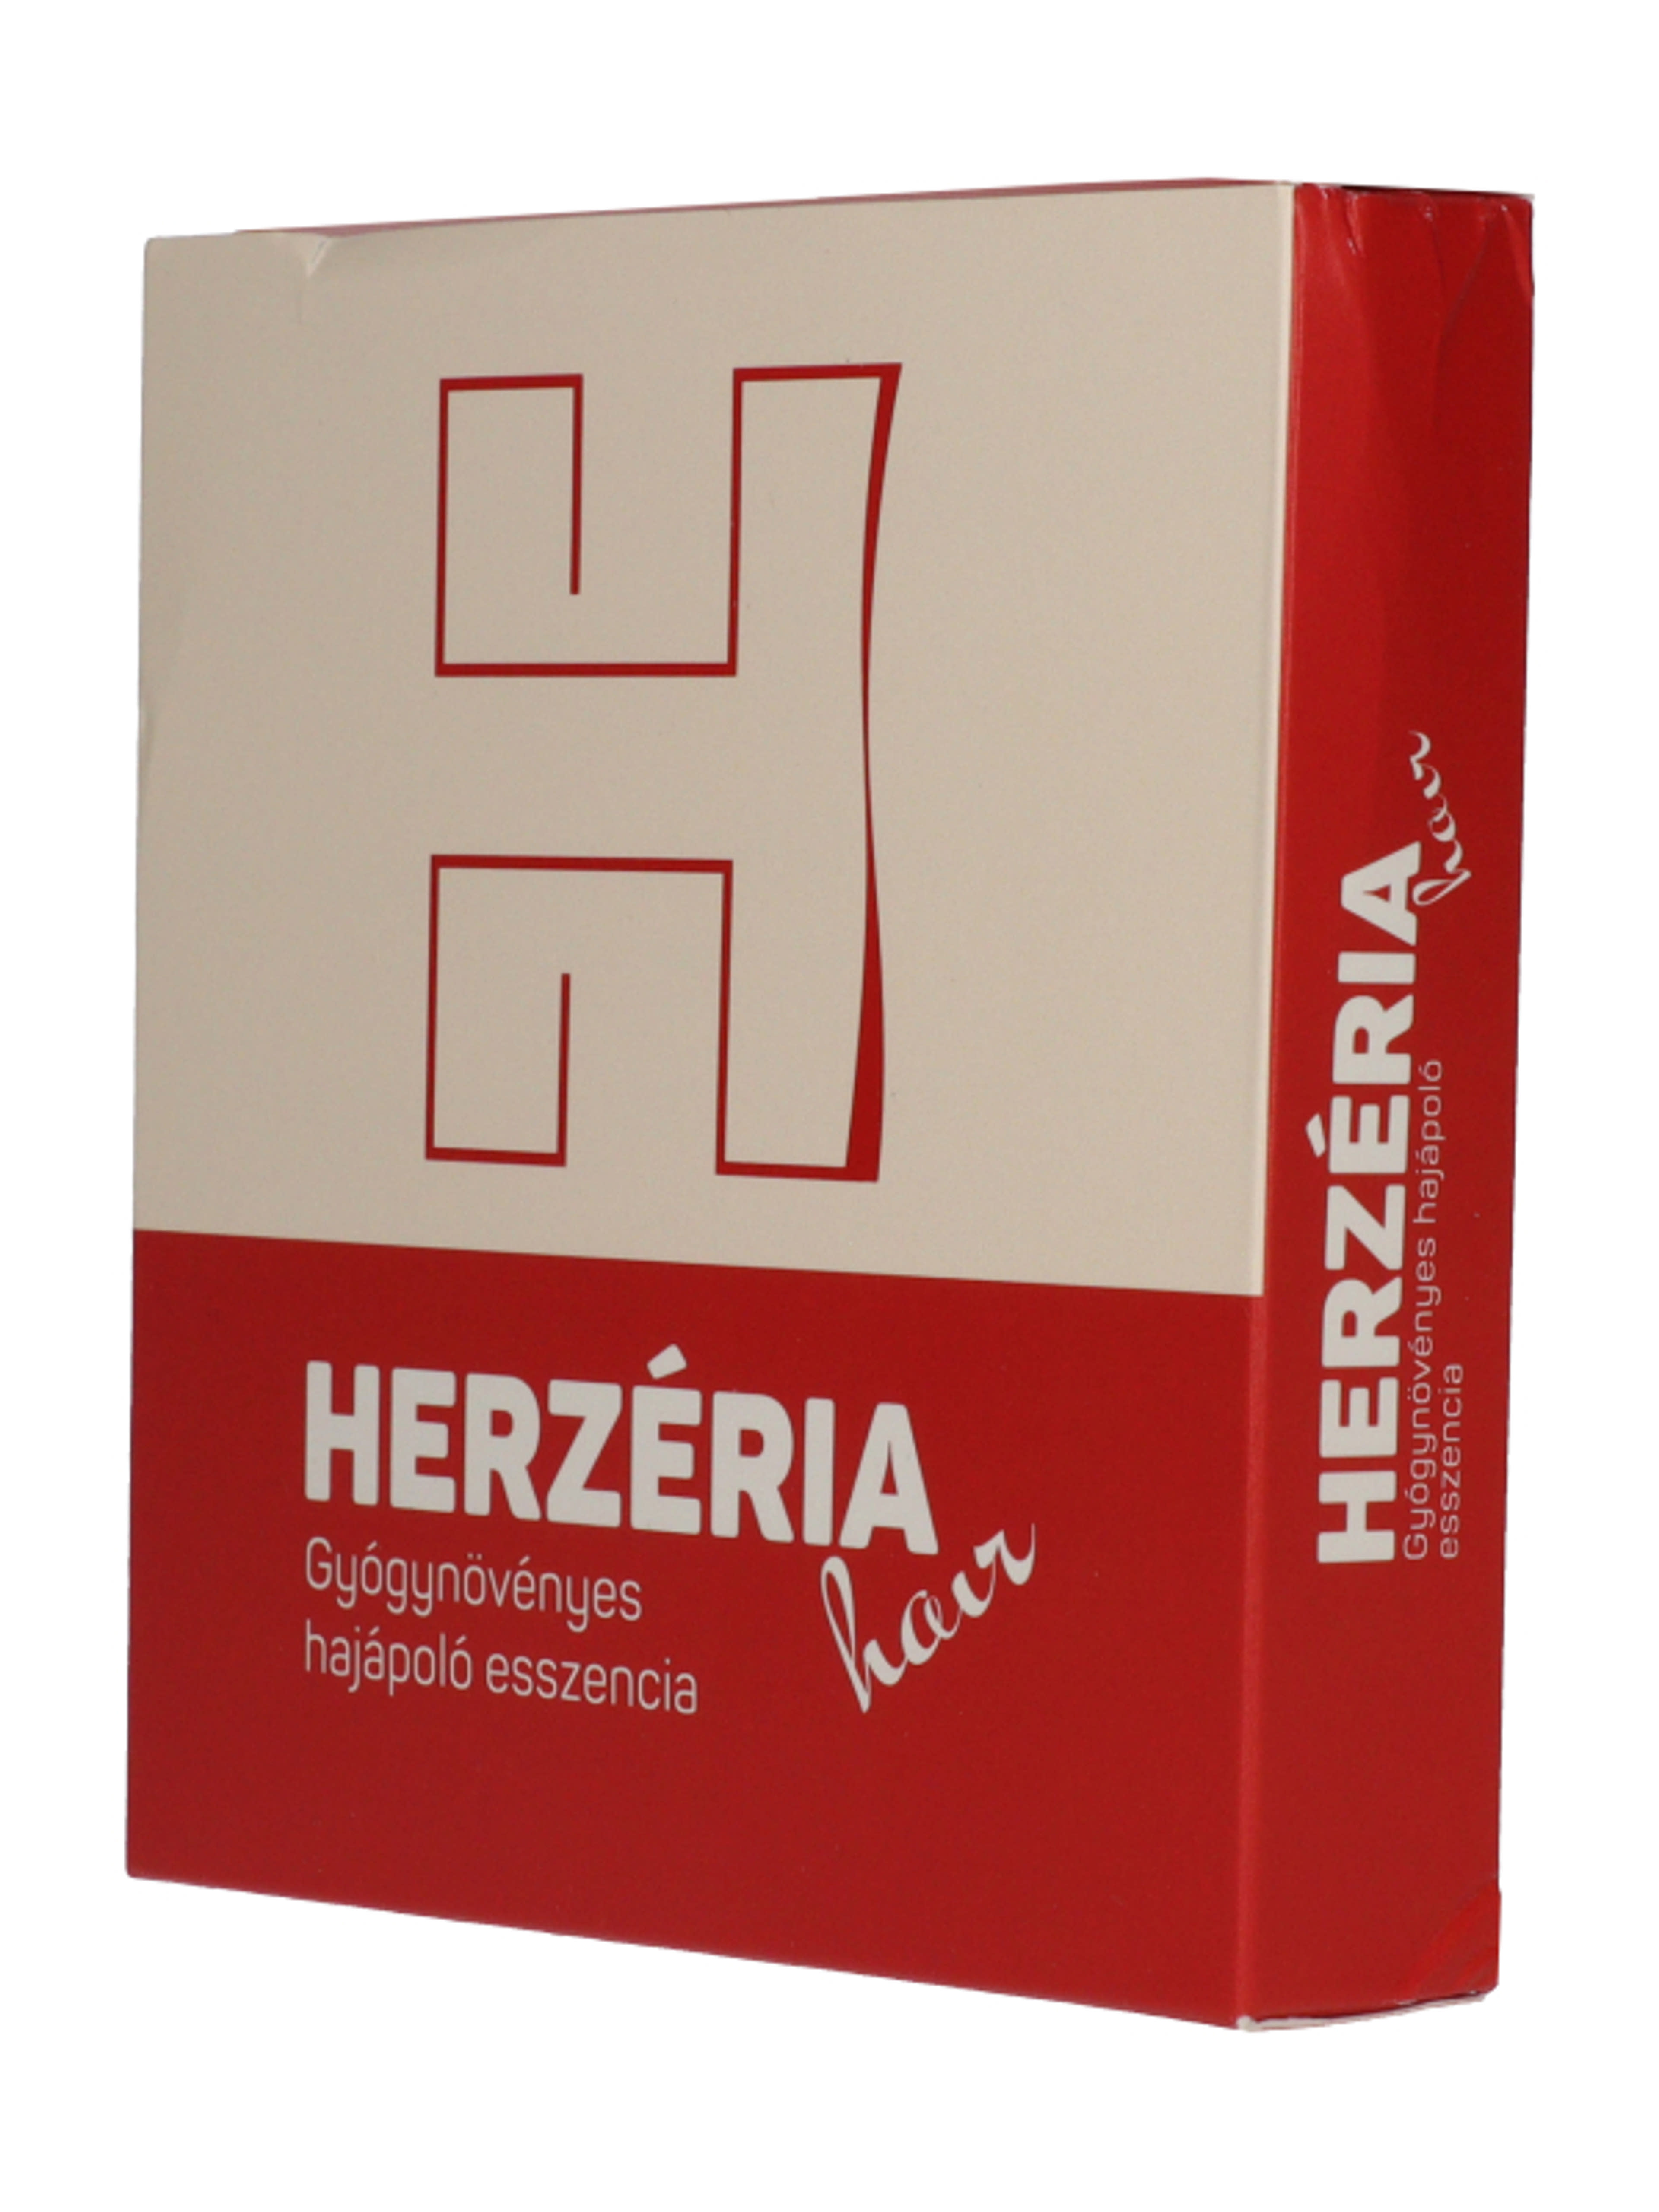 Herzéria Hair hajápoló esszencia - 70 ml-2